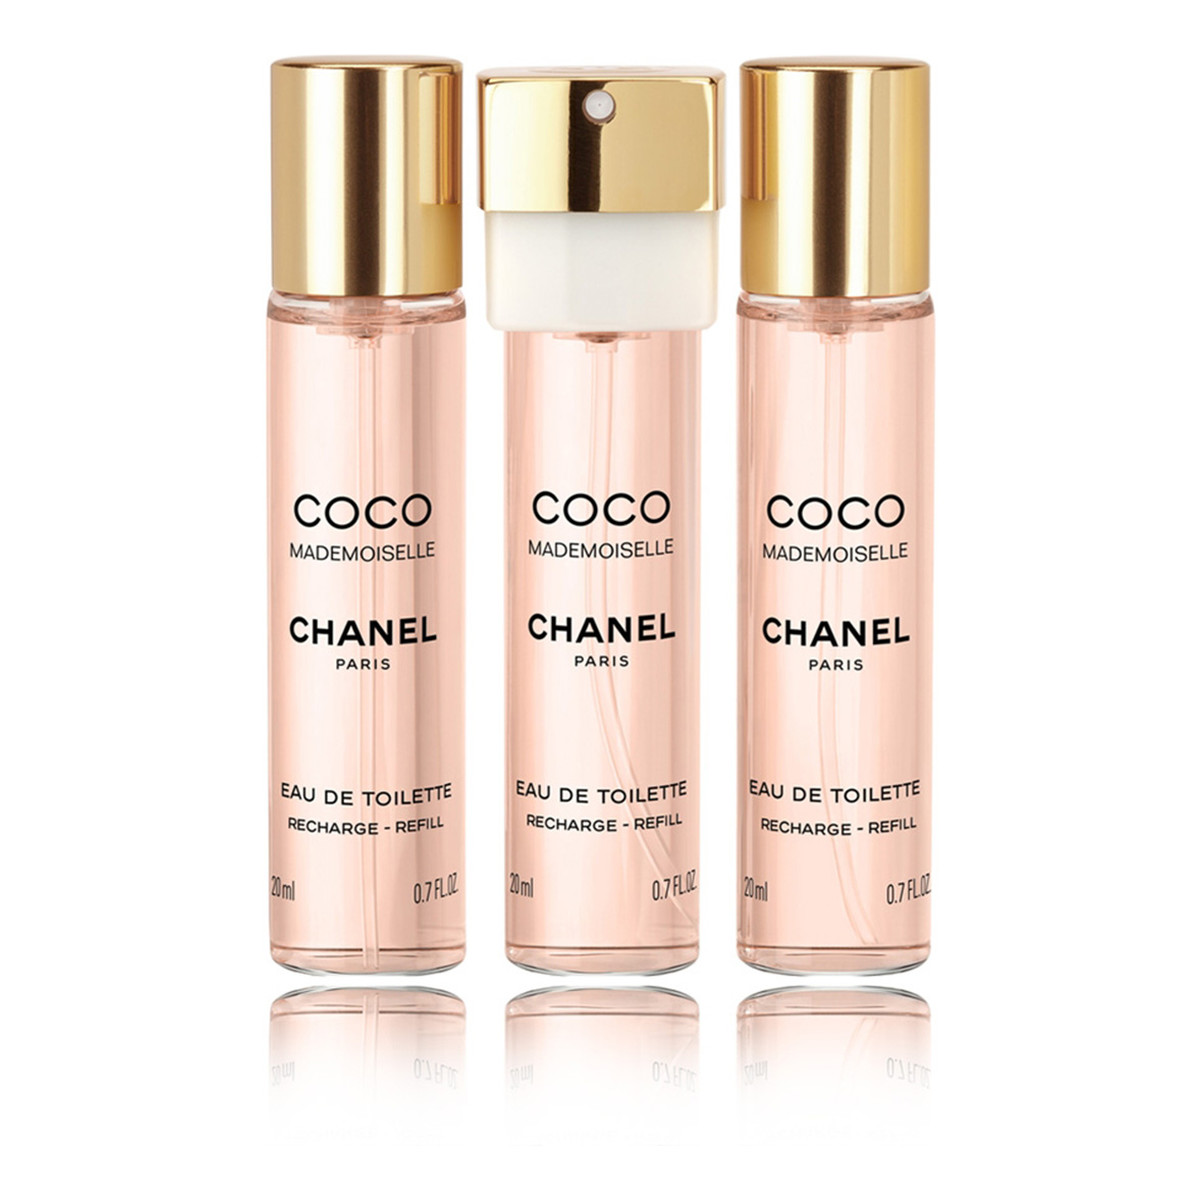 Chanel Coco Mademoiselle Woda toaletowa 20ml + Woda toaletowa 2 x spray wkład uzupełniający 20ml 2ml